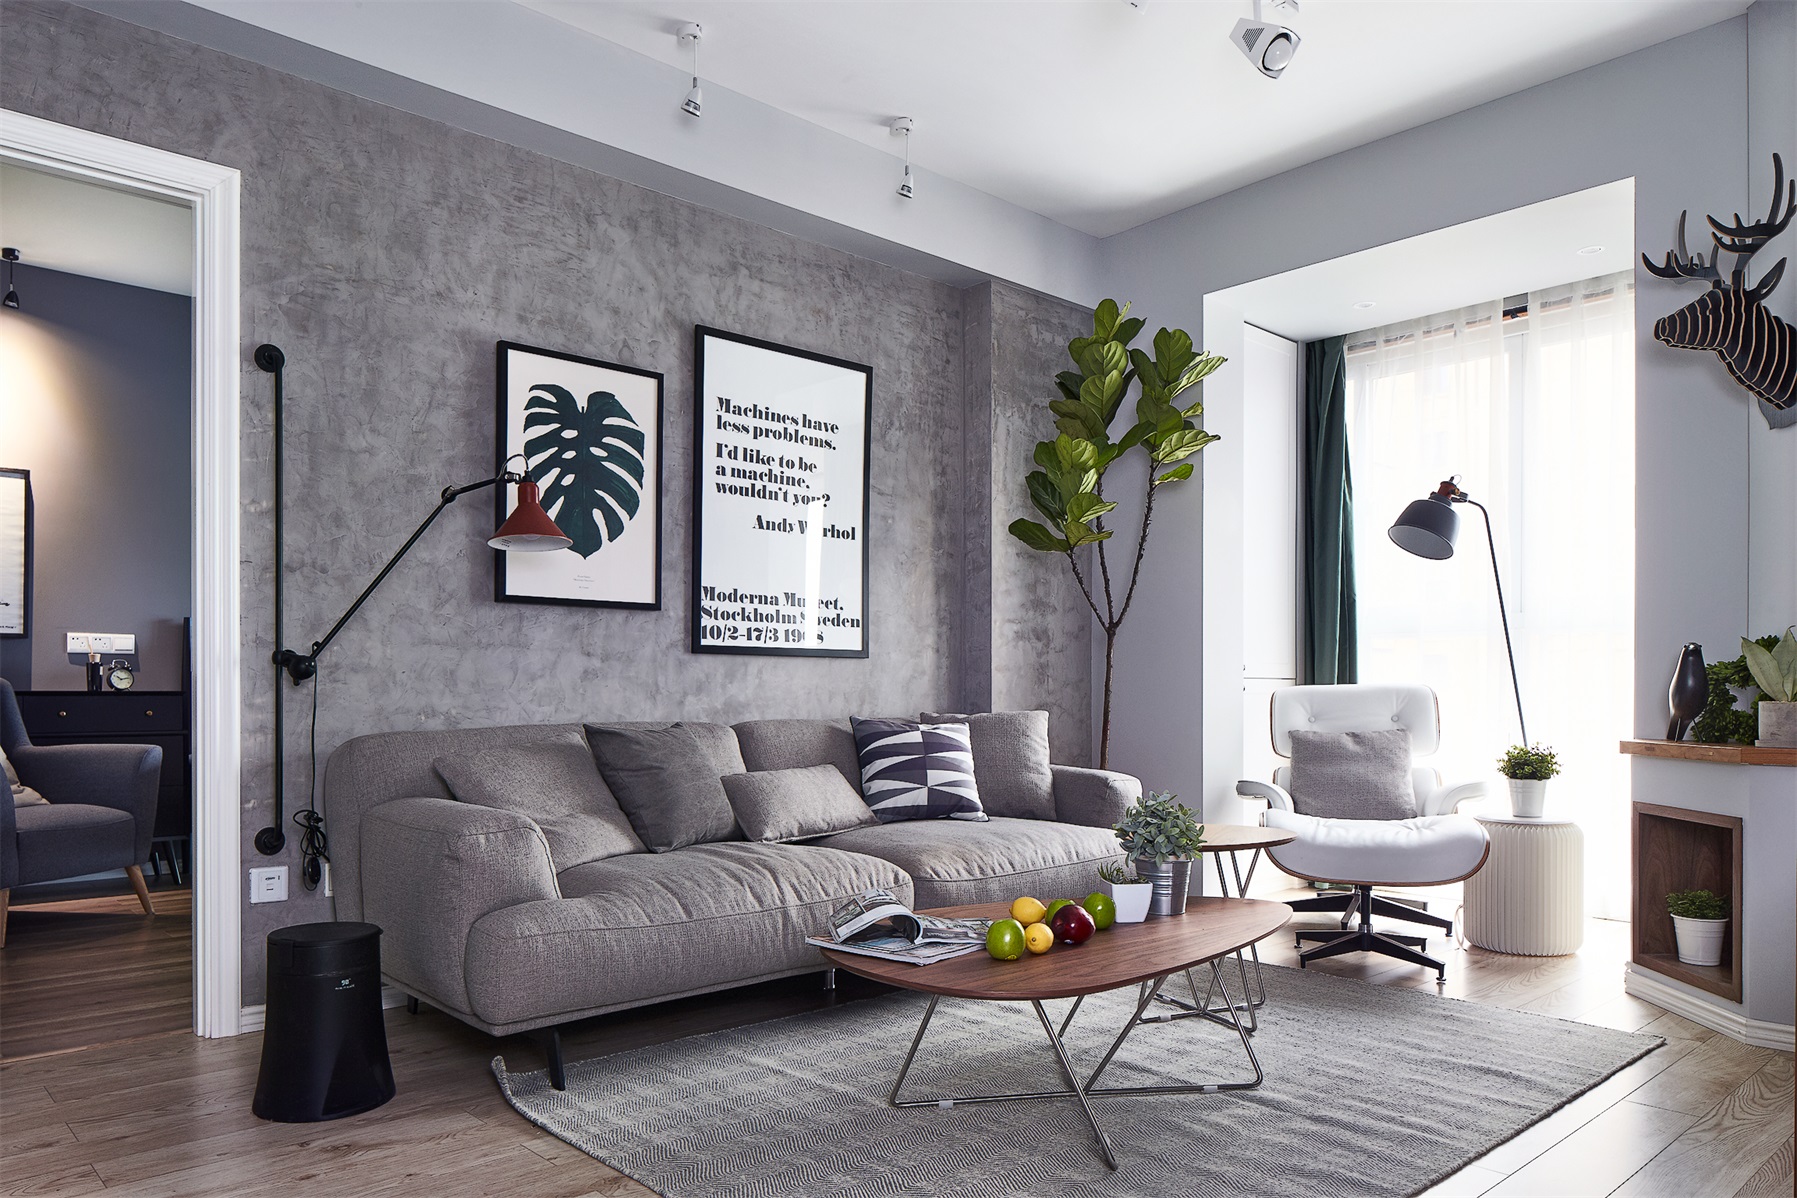 沙发背景墙设计干净简约，局部挂件有层次感，灰色布艺沙发与地毯完美结合，增添空间温馨格调。